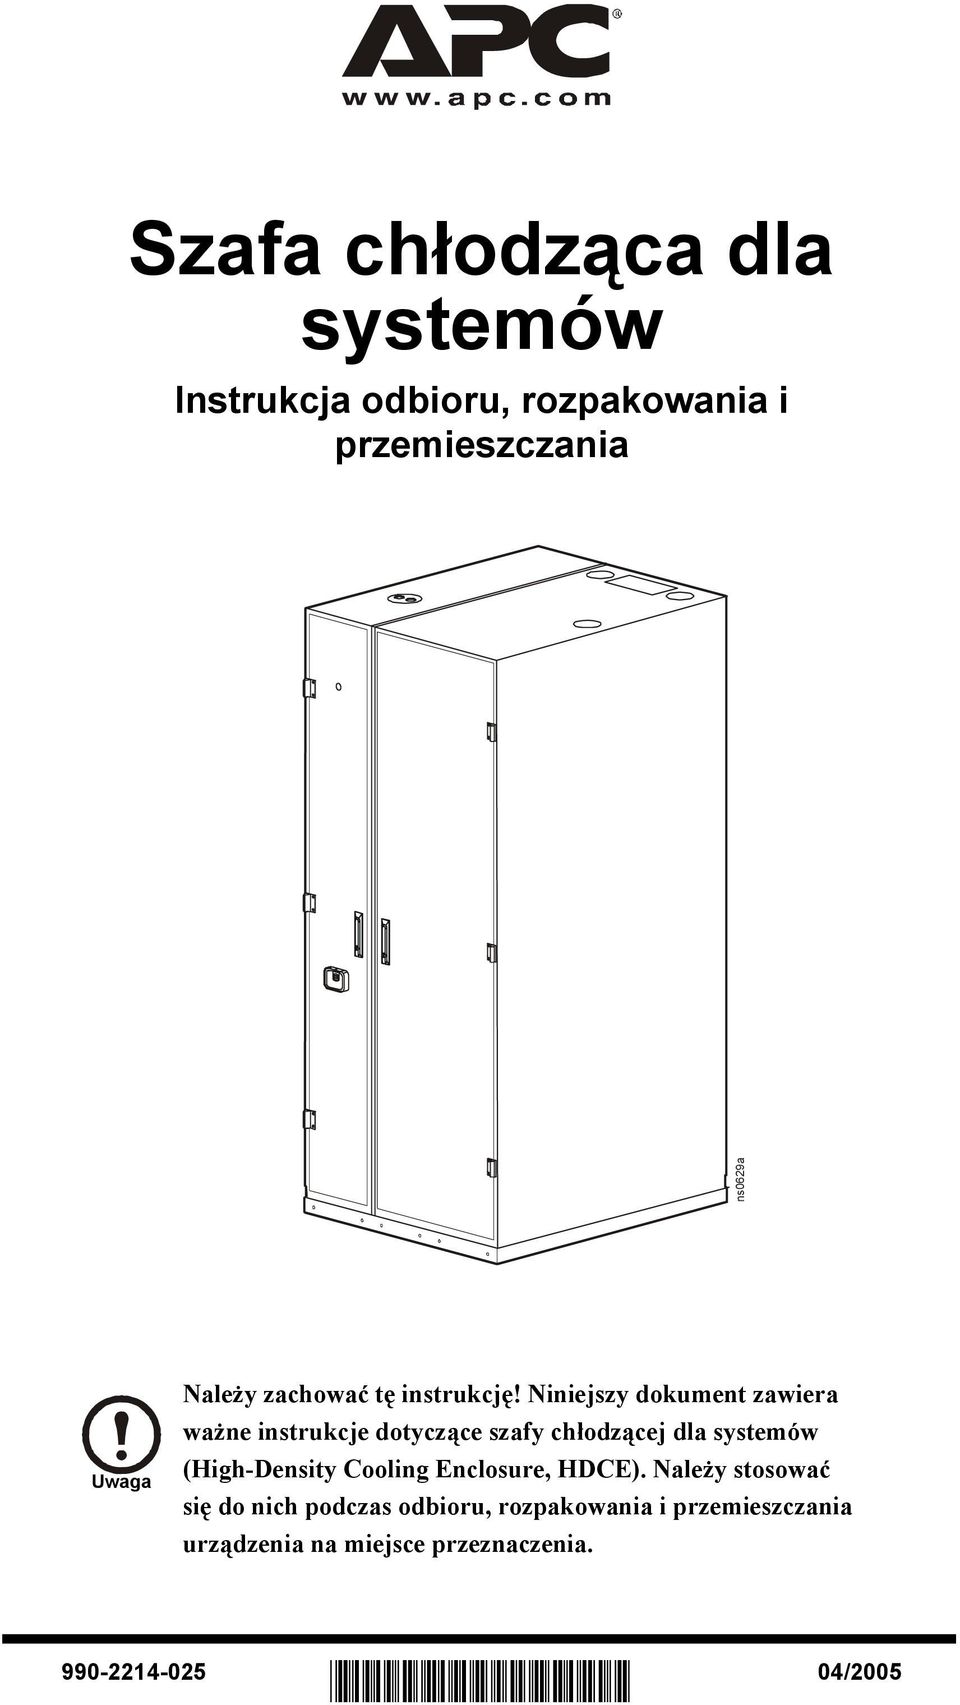 Niniejszy dokument zawiera ważne instrukcje dotyczące szafy chłodzącej dla systemów (High-Density